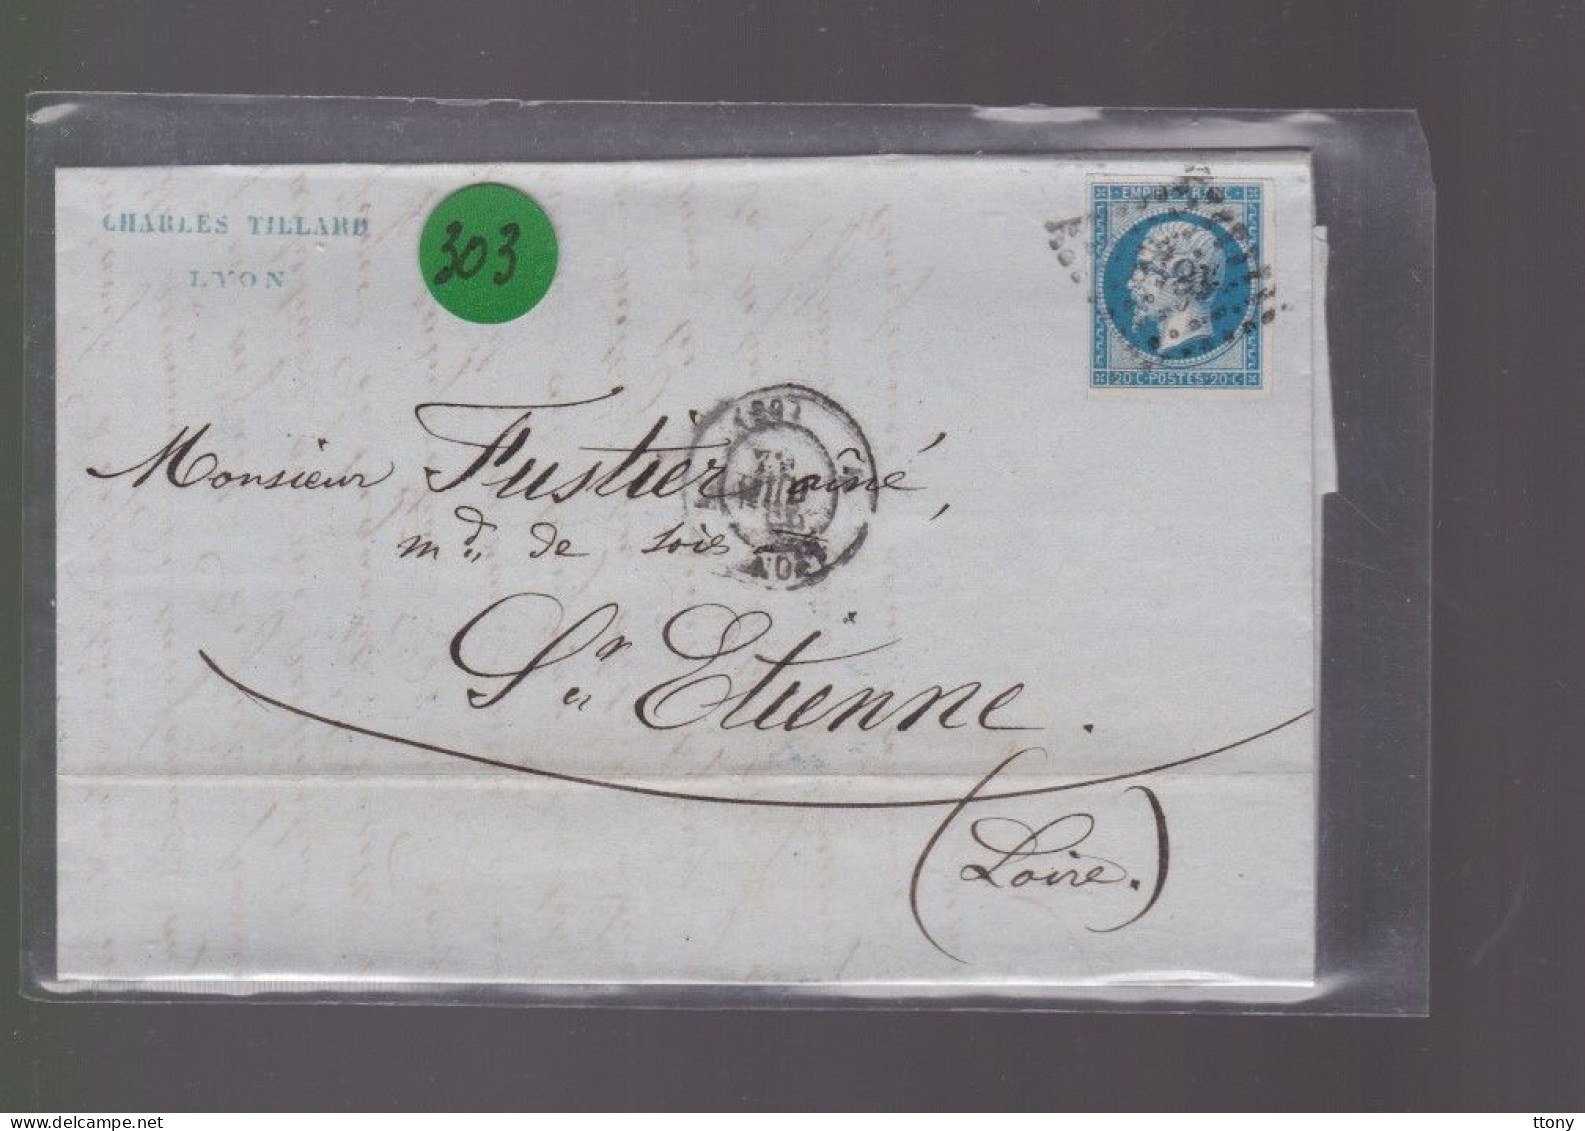 Un  Timbre  Napoléon III N° 14     20 C Bleu  Lettre Cachet Lyon    1862   Destination  St -Etienne - 1862 Napoléon III